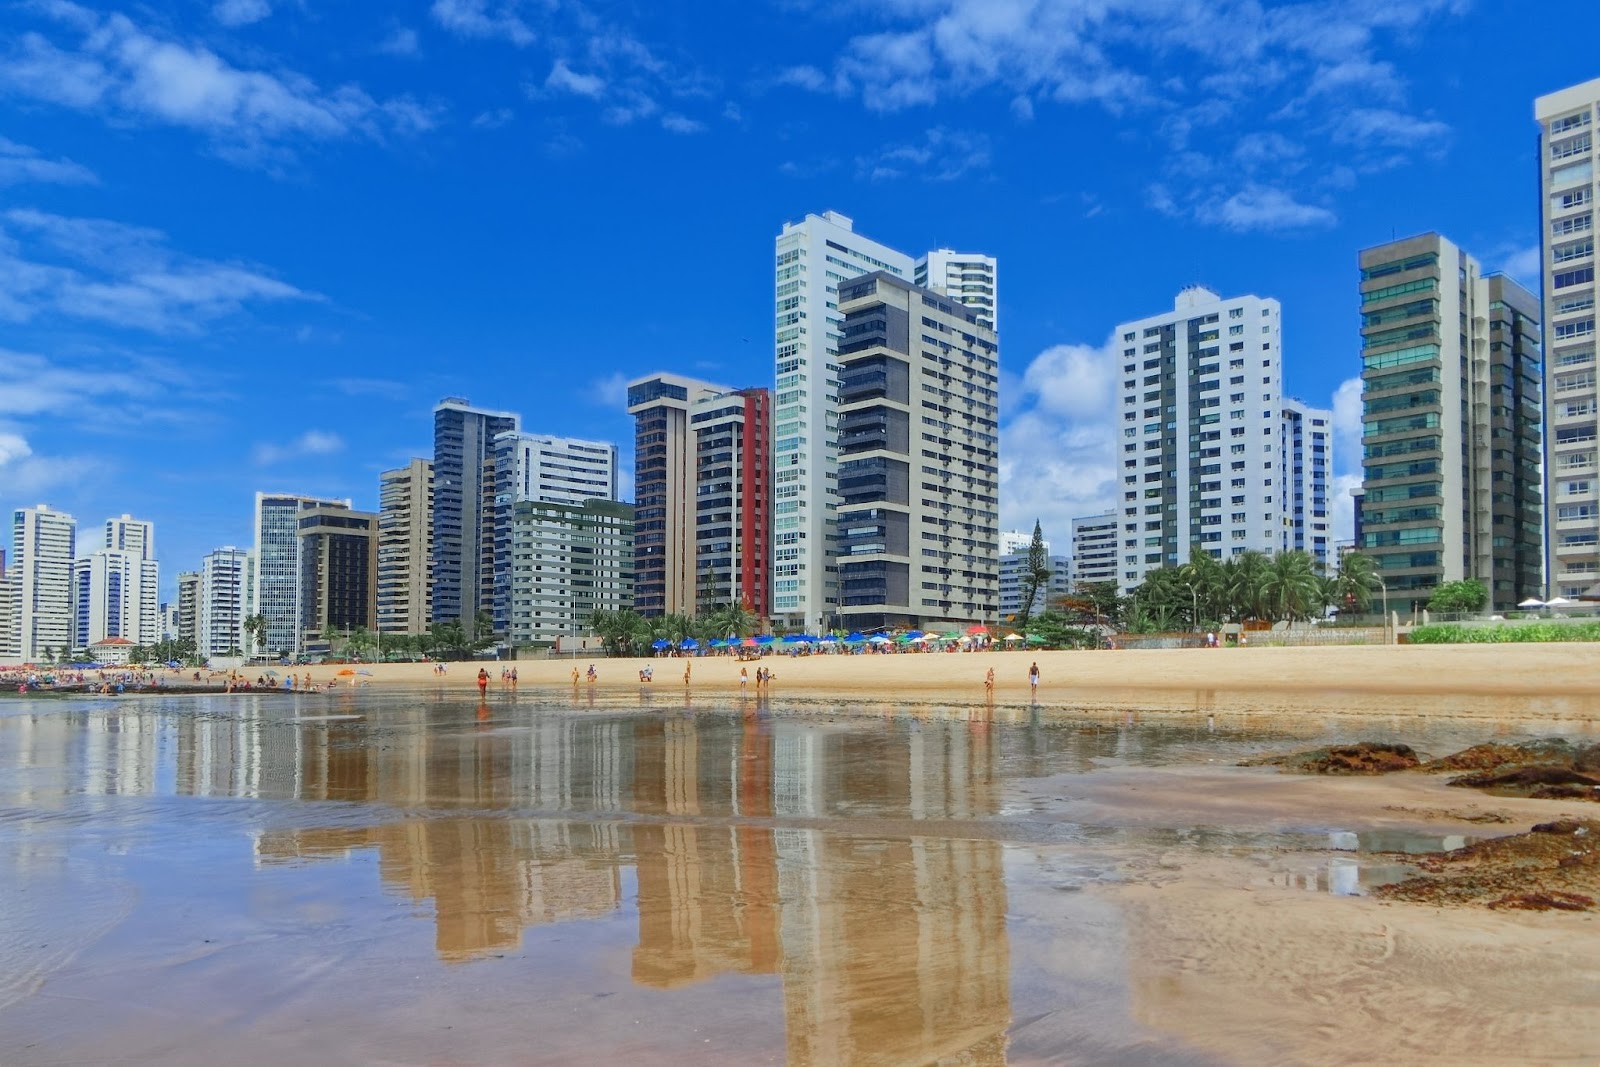 Praia de Piedade em Jaboatão dos Guararapes. Foto tirada com vista para a orla repleta de prédios de diferentes tamanhos, faixa de areia e águas cristalinas do mar